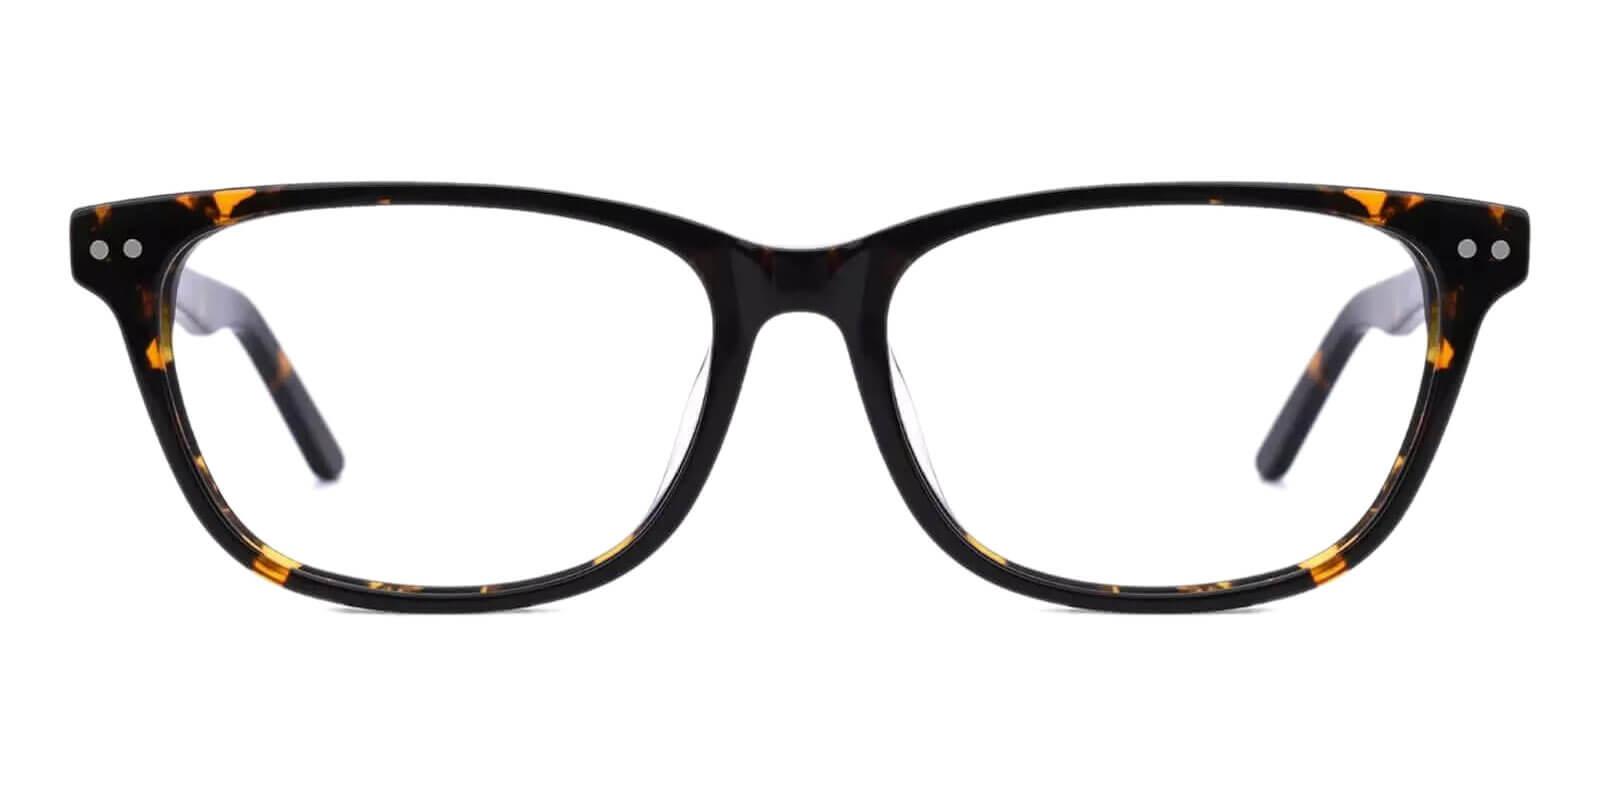 Alta Tortoise Acetate Eyeglasses , SpringHinges , UniversalBridgeFit Frames from ABBE Glasses